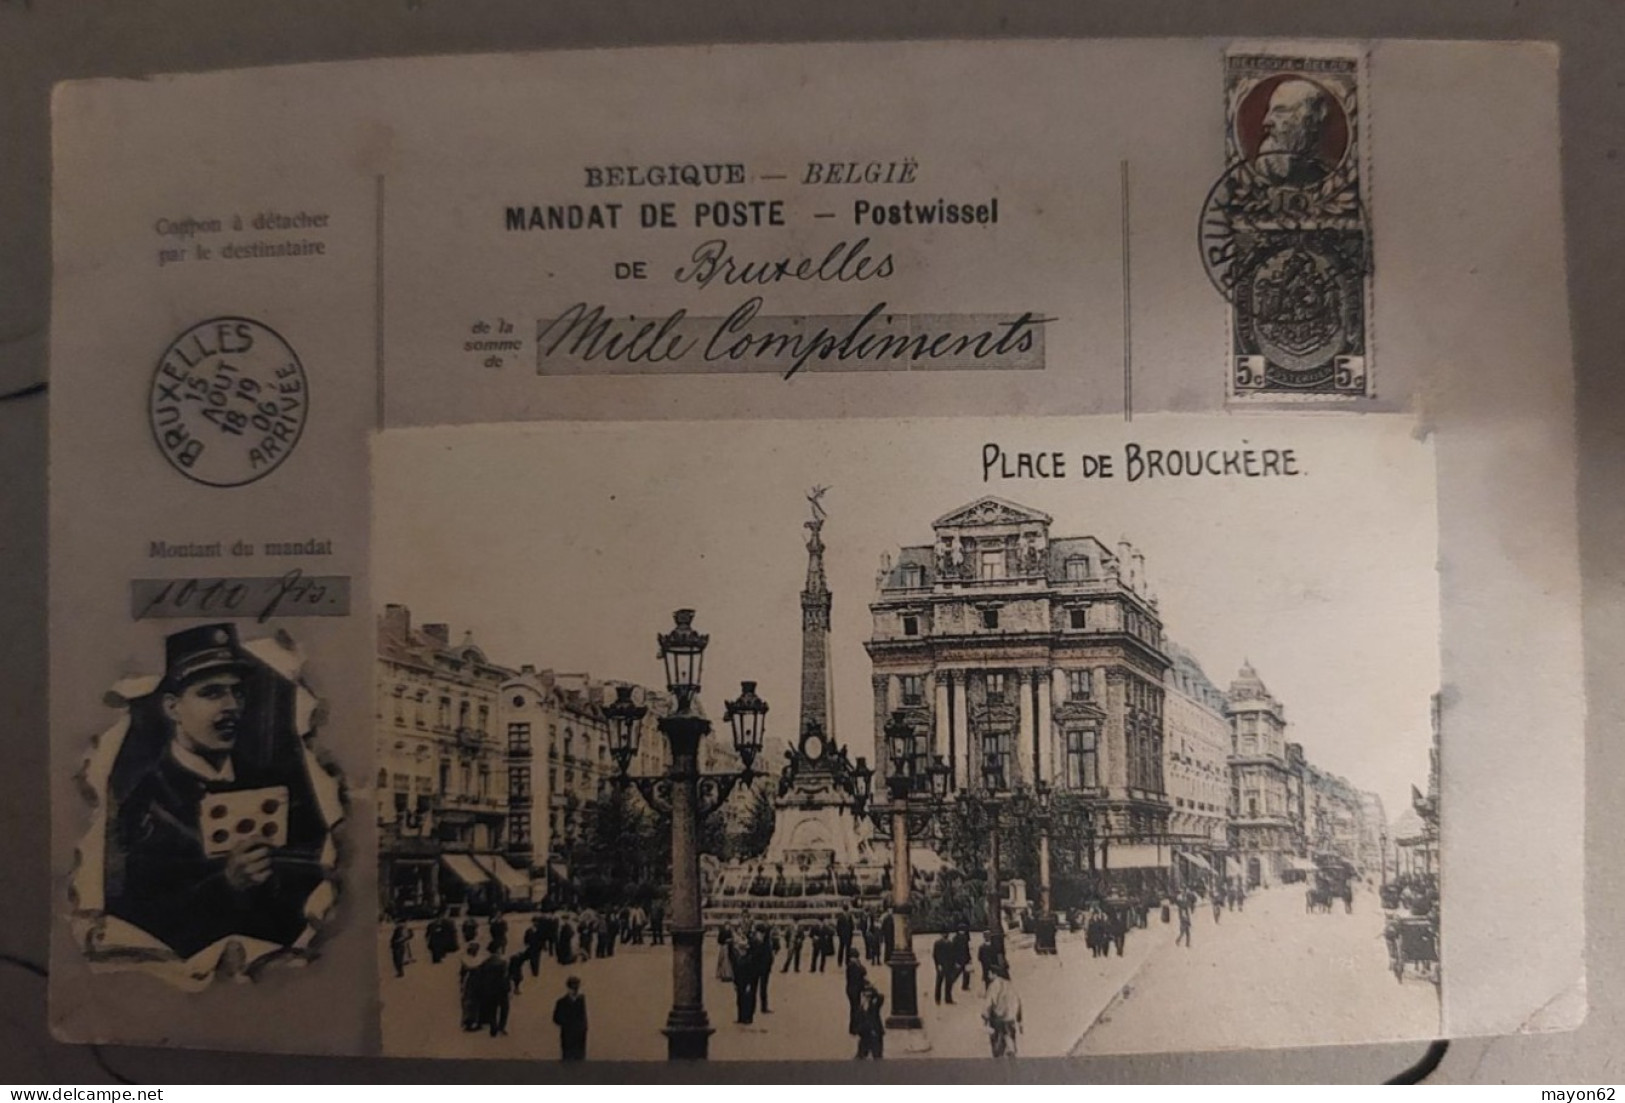 BRUXELLES - CPA MANDAT POSTE DE BRUXELLES 1906 - PLACE DE BROUCKERE - BELLE CPA - Squares